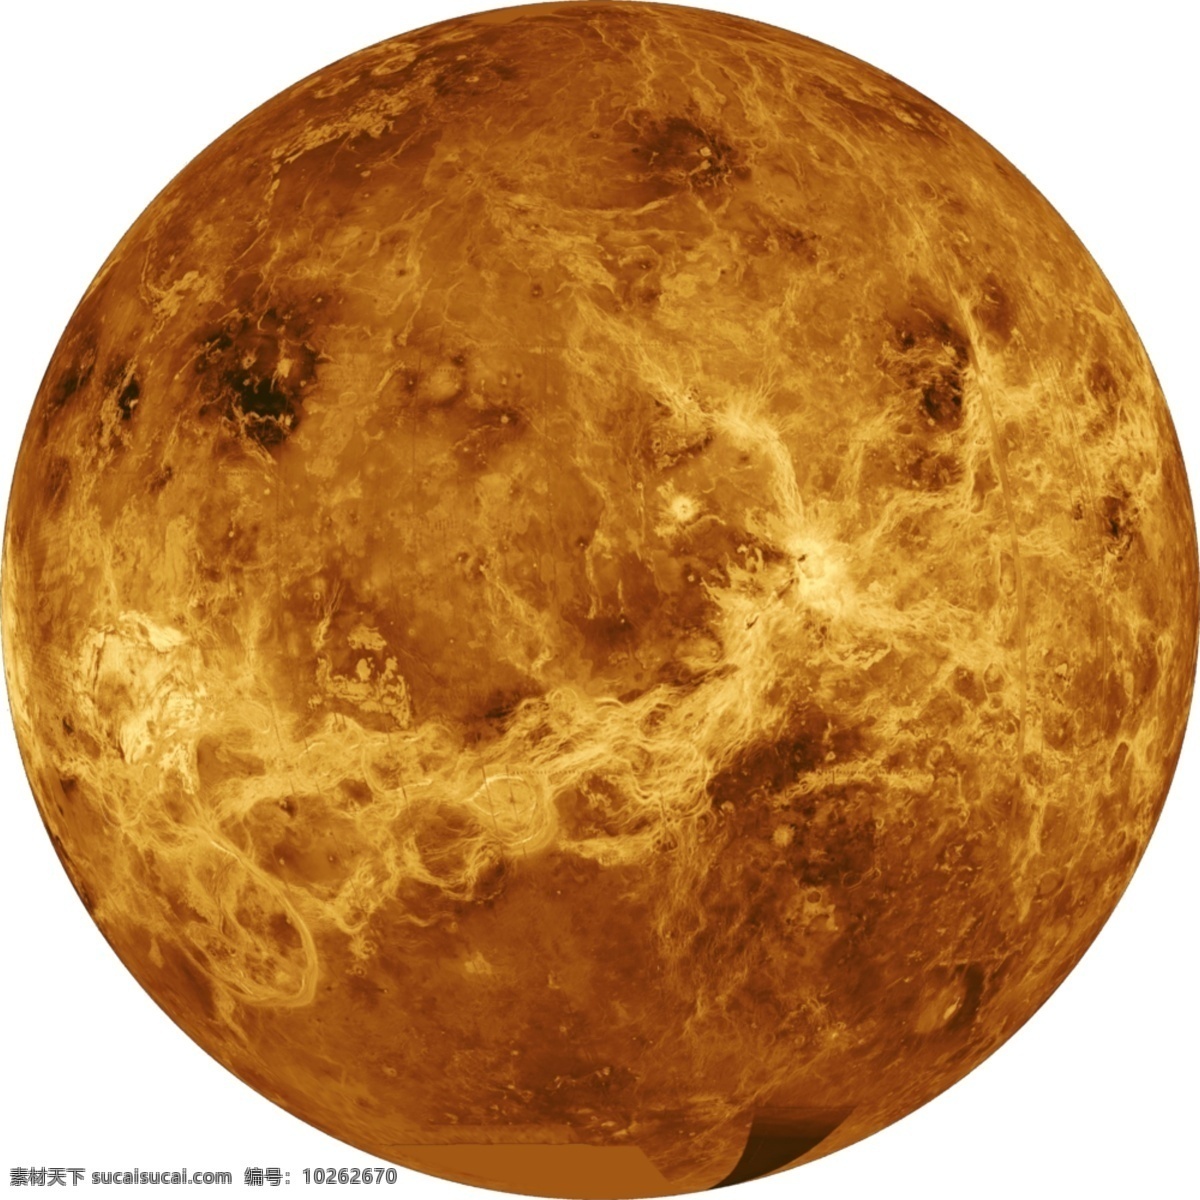 凹凸不平 金星 免 抠 透明 元素 图形 金星海报图片 金星广告素材 金星海报图